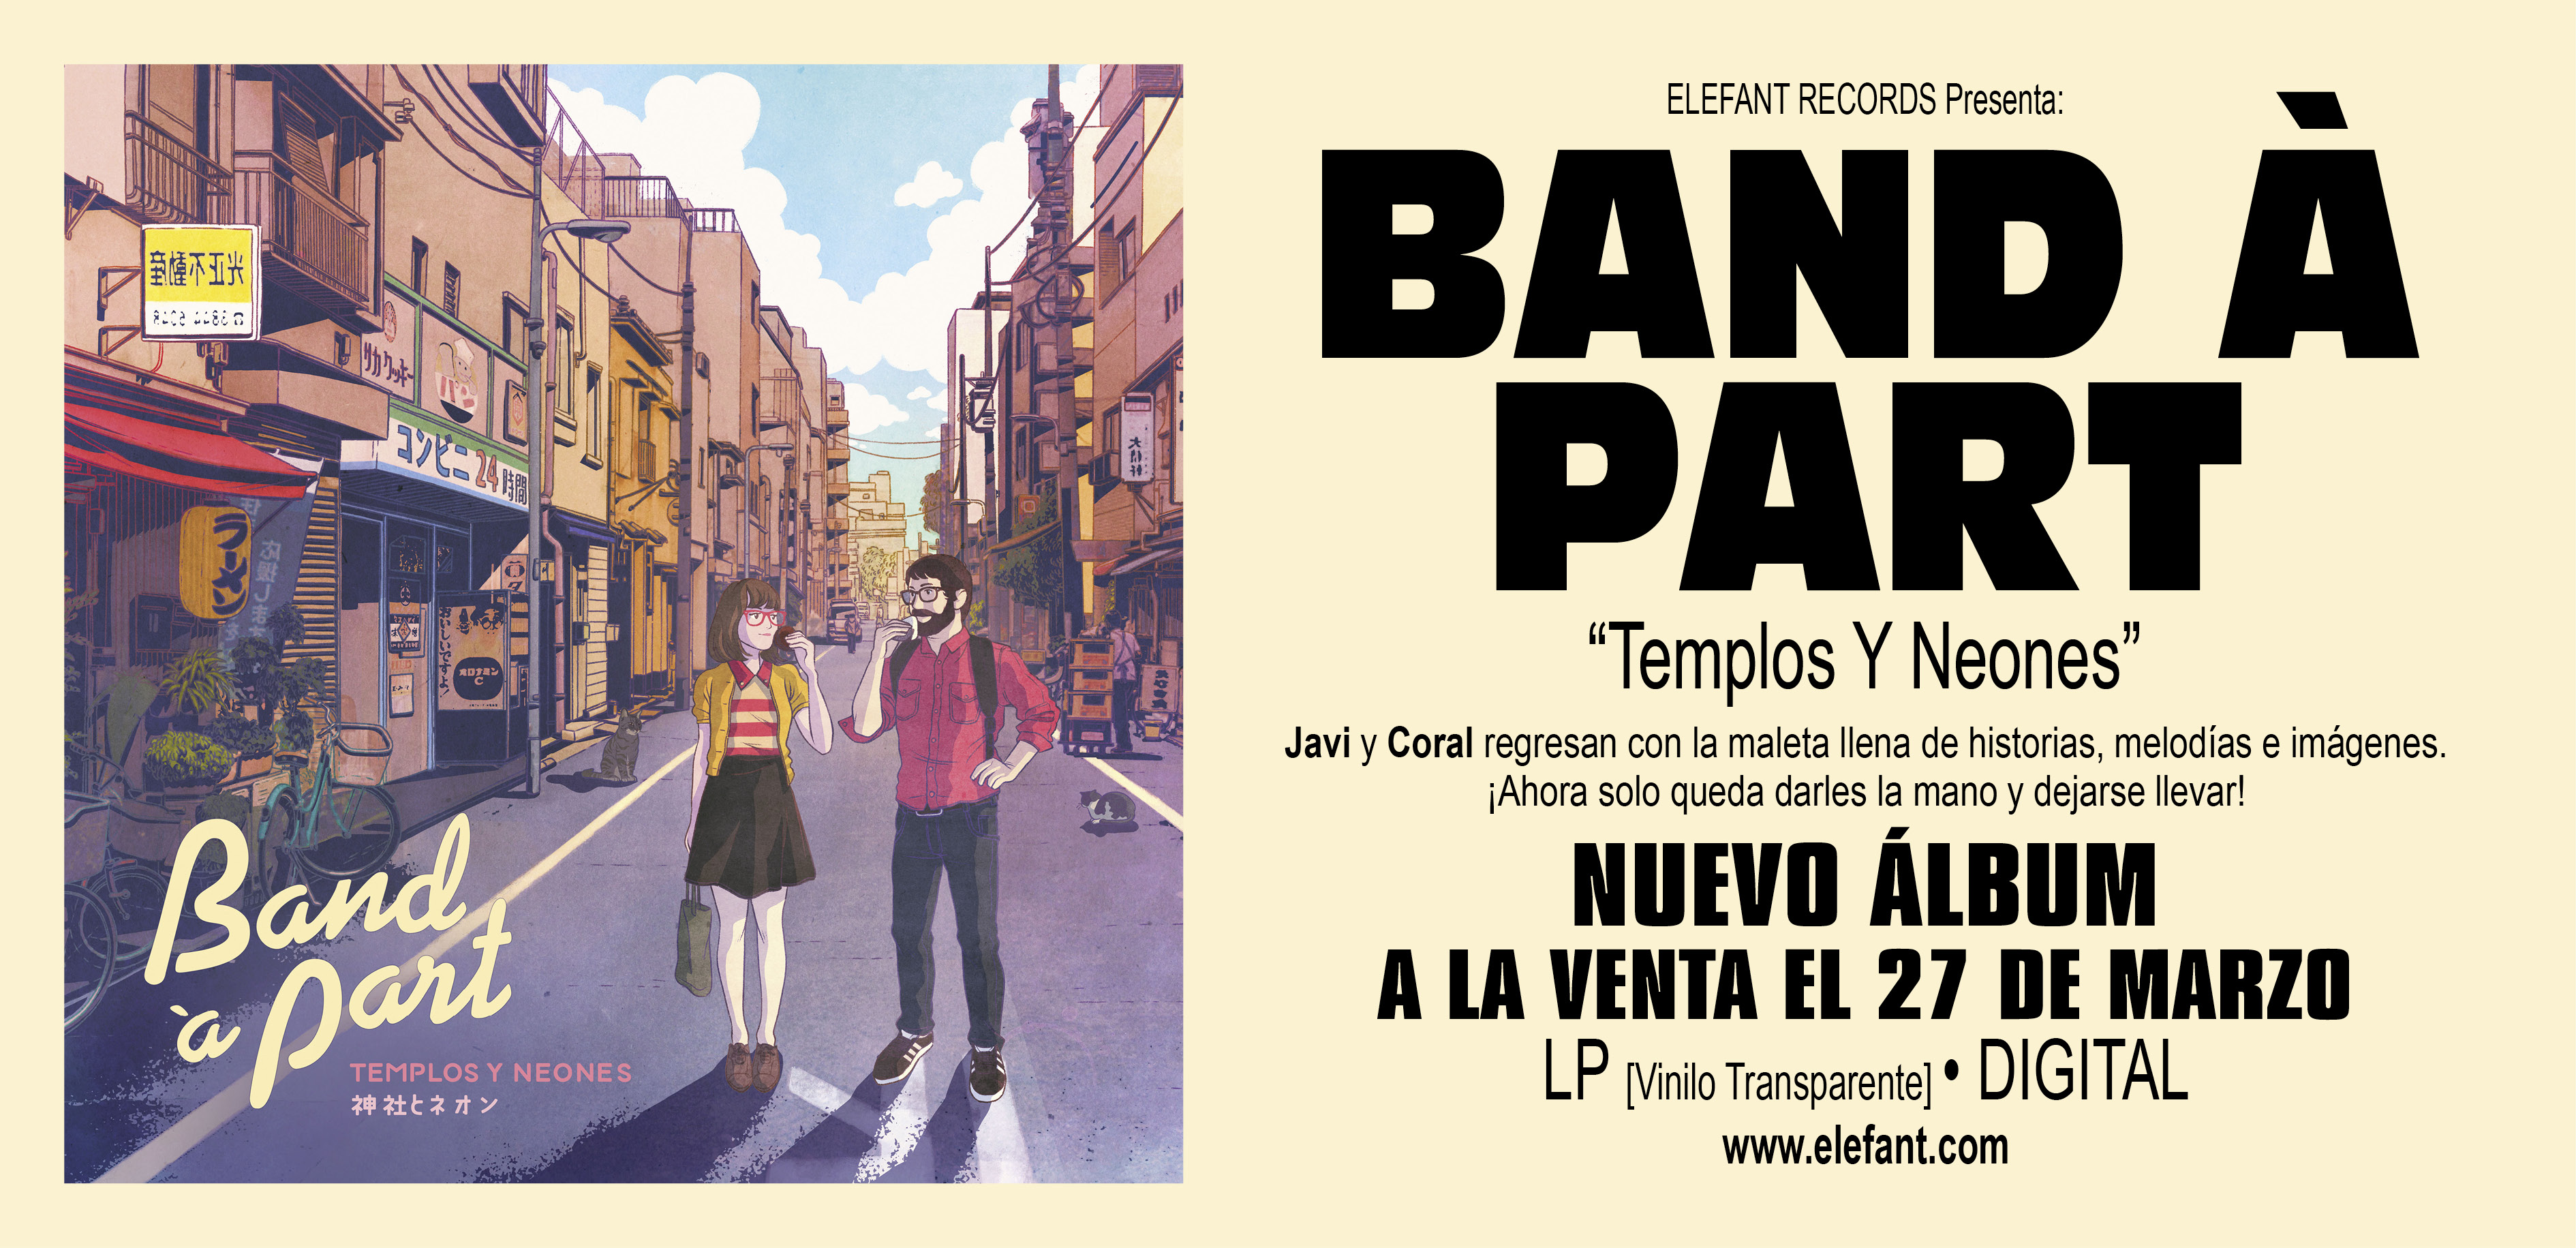 Band À Part "Templos Y Neones" LP